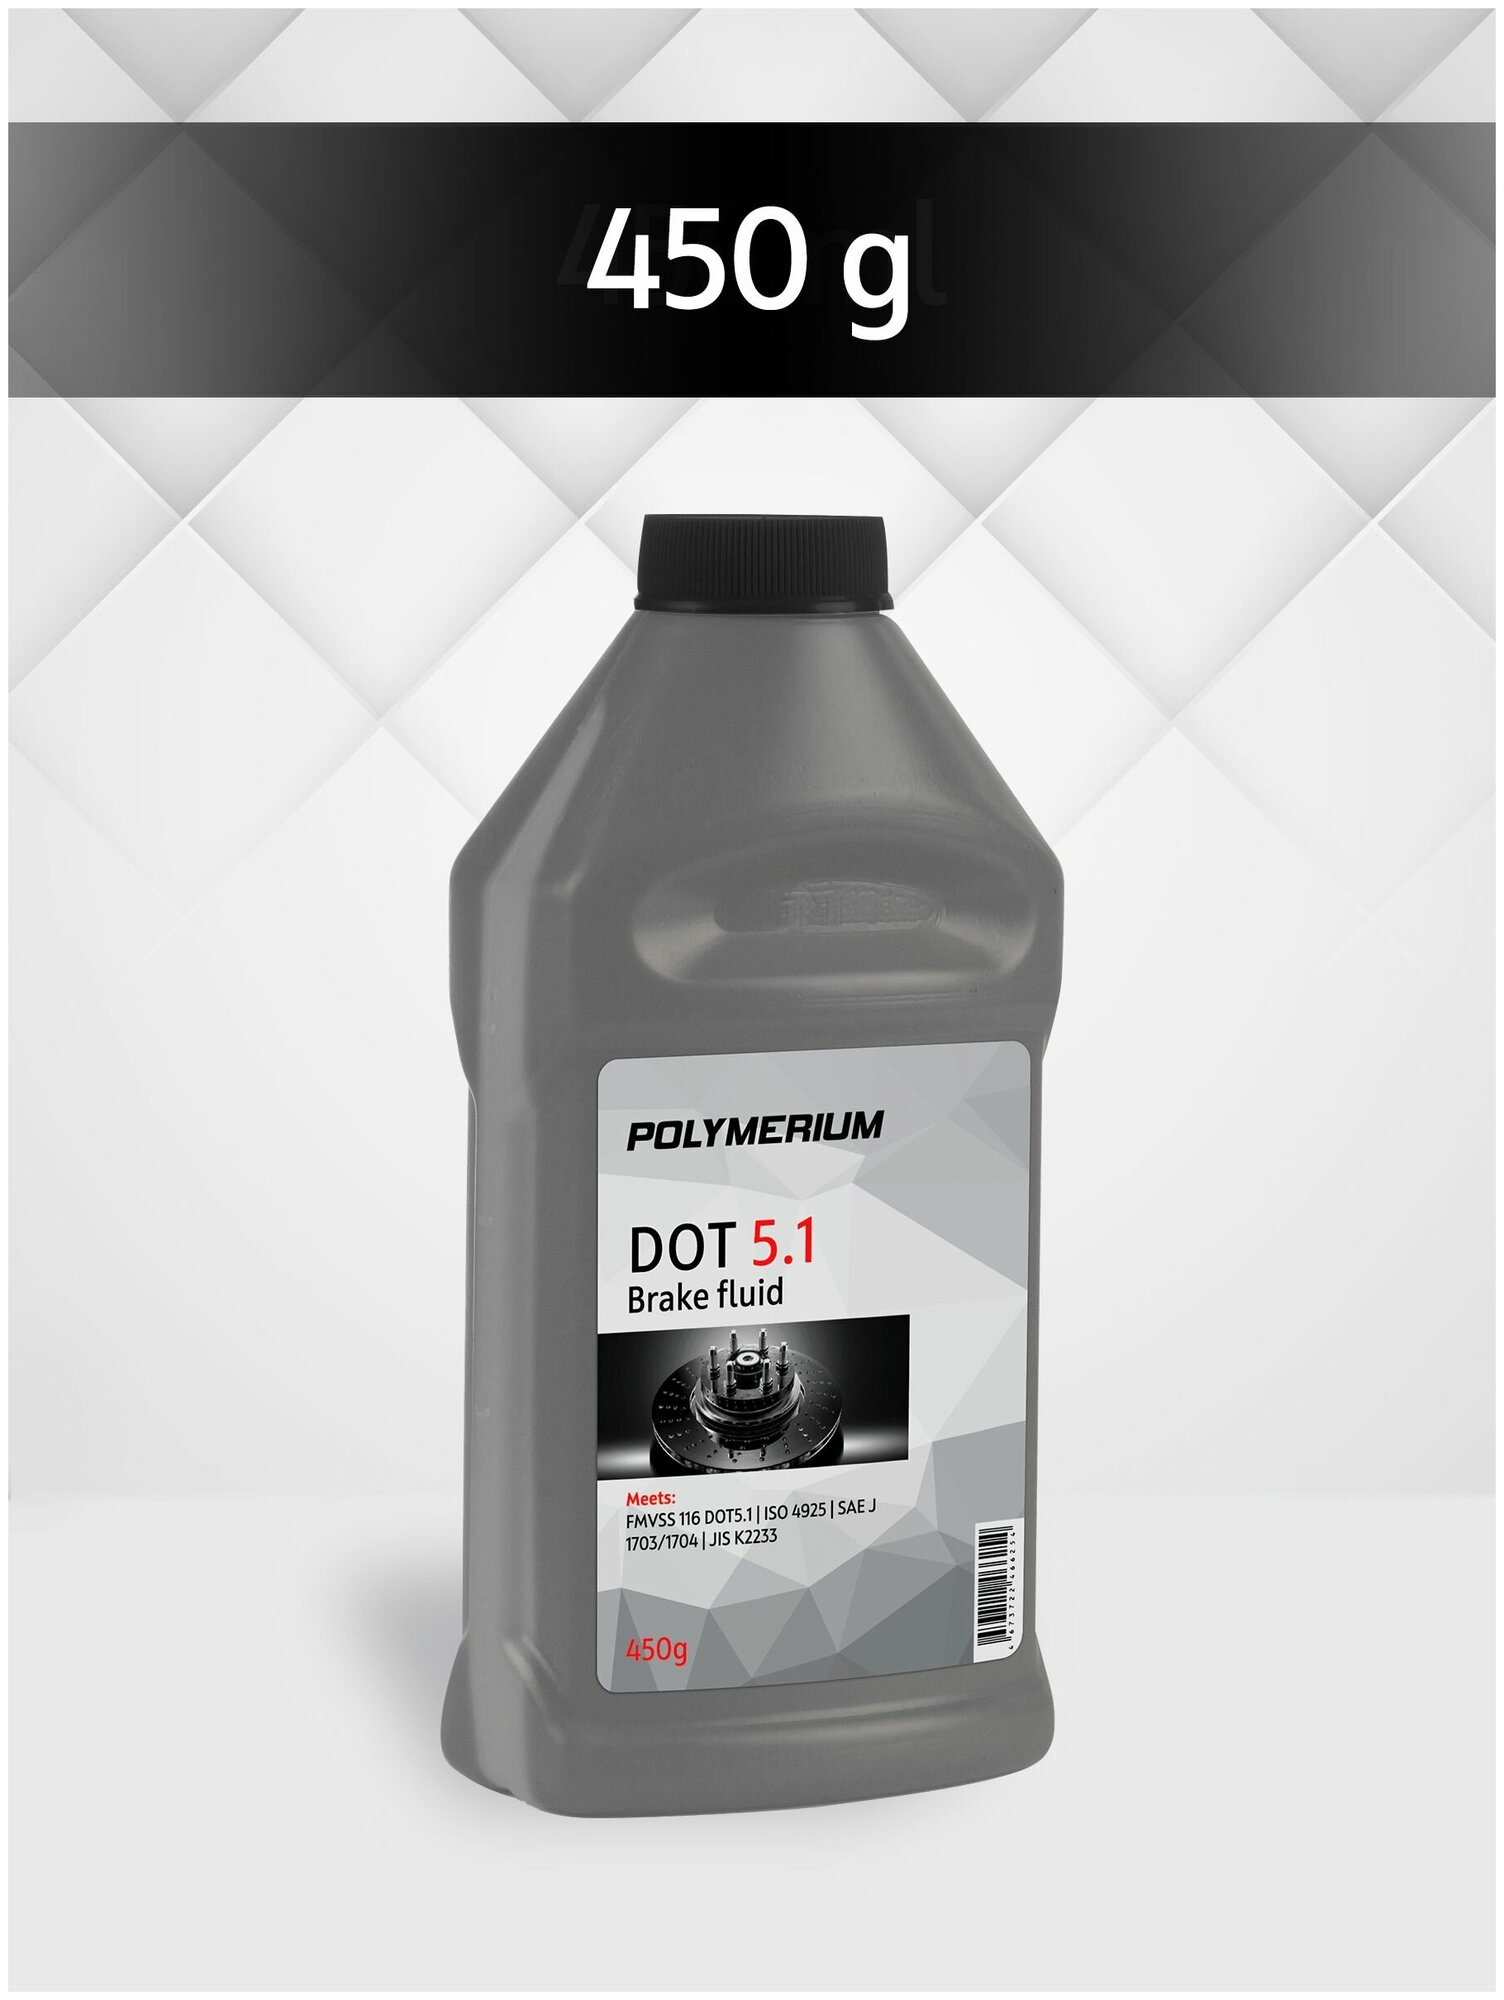 Тормозная жидкость POLYMERIUM класса DOT 5.1 жидкость для автомобиля дот 5.1 450г